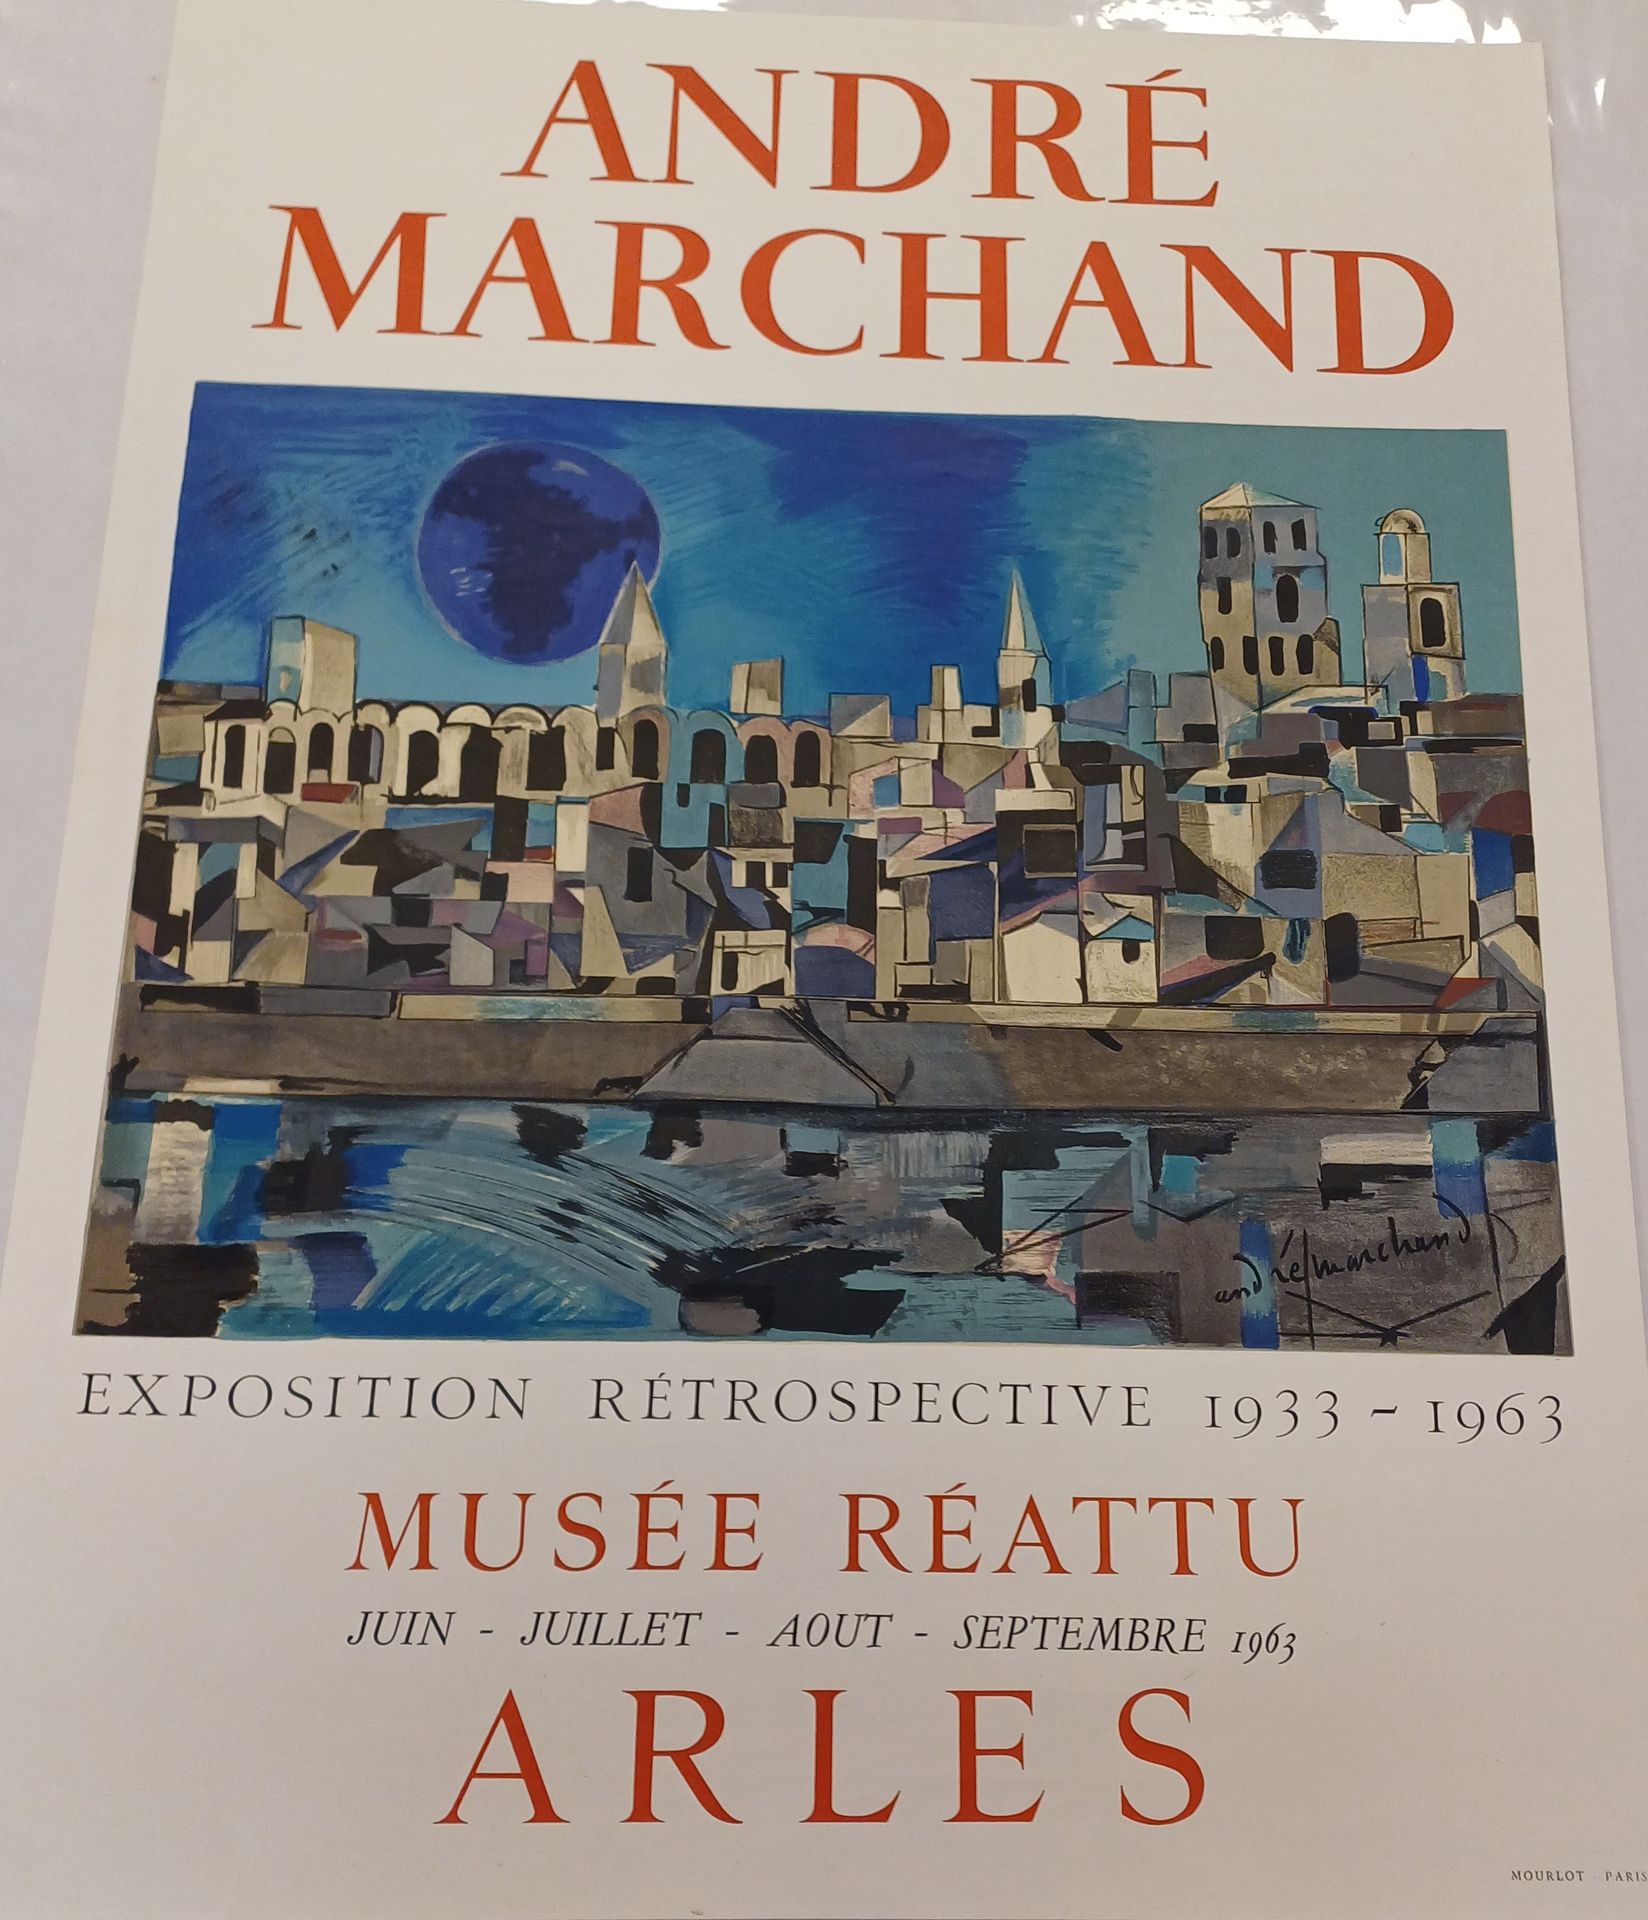 André Marchand Affiche André Marchand
Musée Reatu Arles 1963
65,5 x 50,5 cm